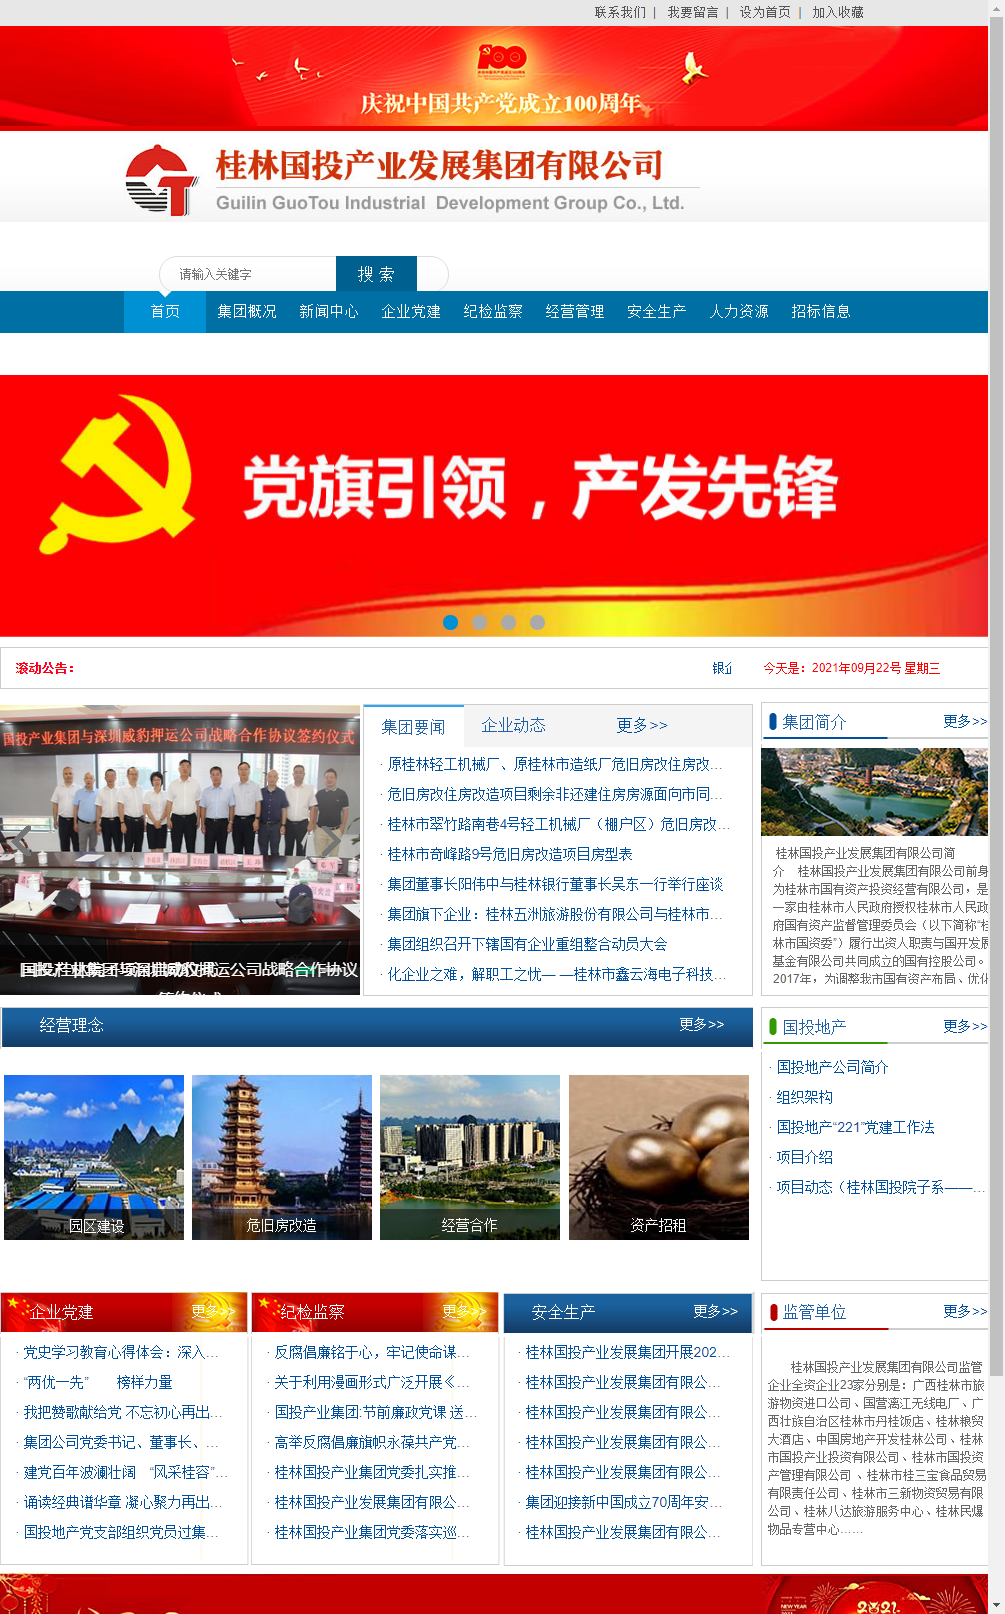 桂林国投产业发展集团有限公司网站案例